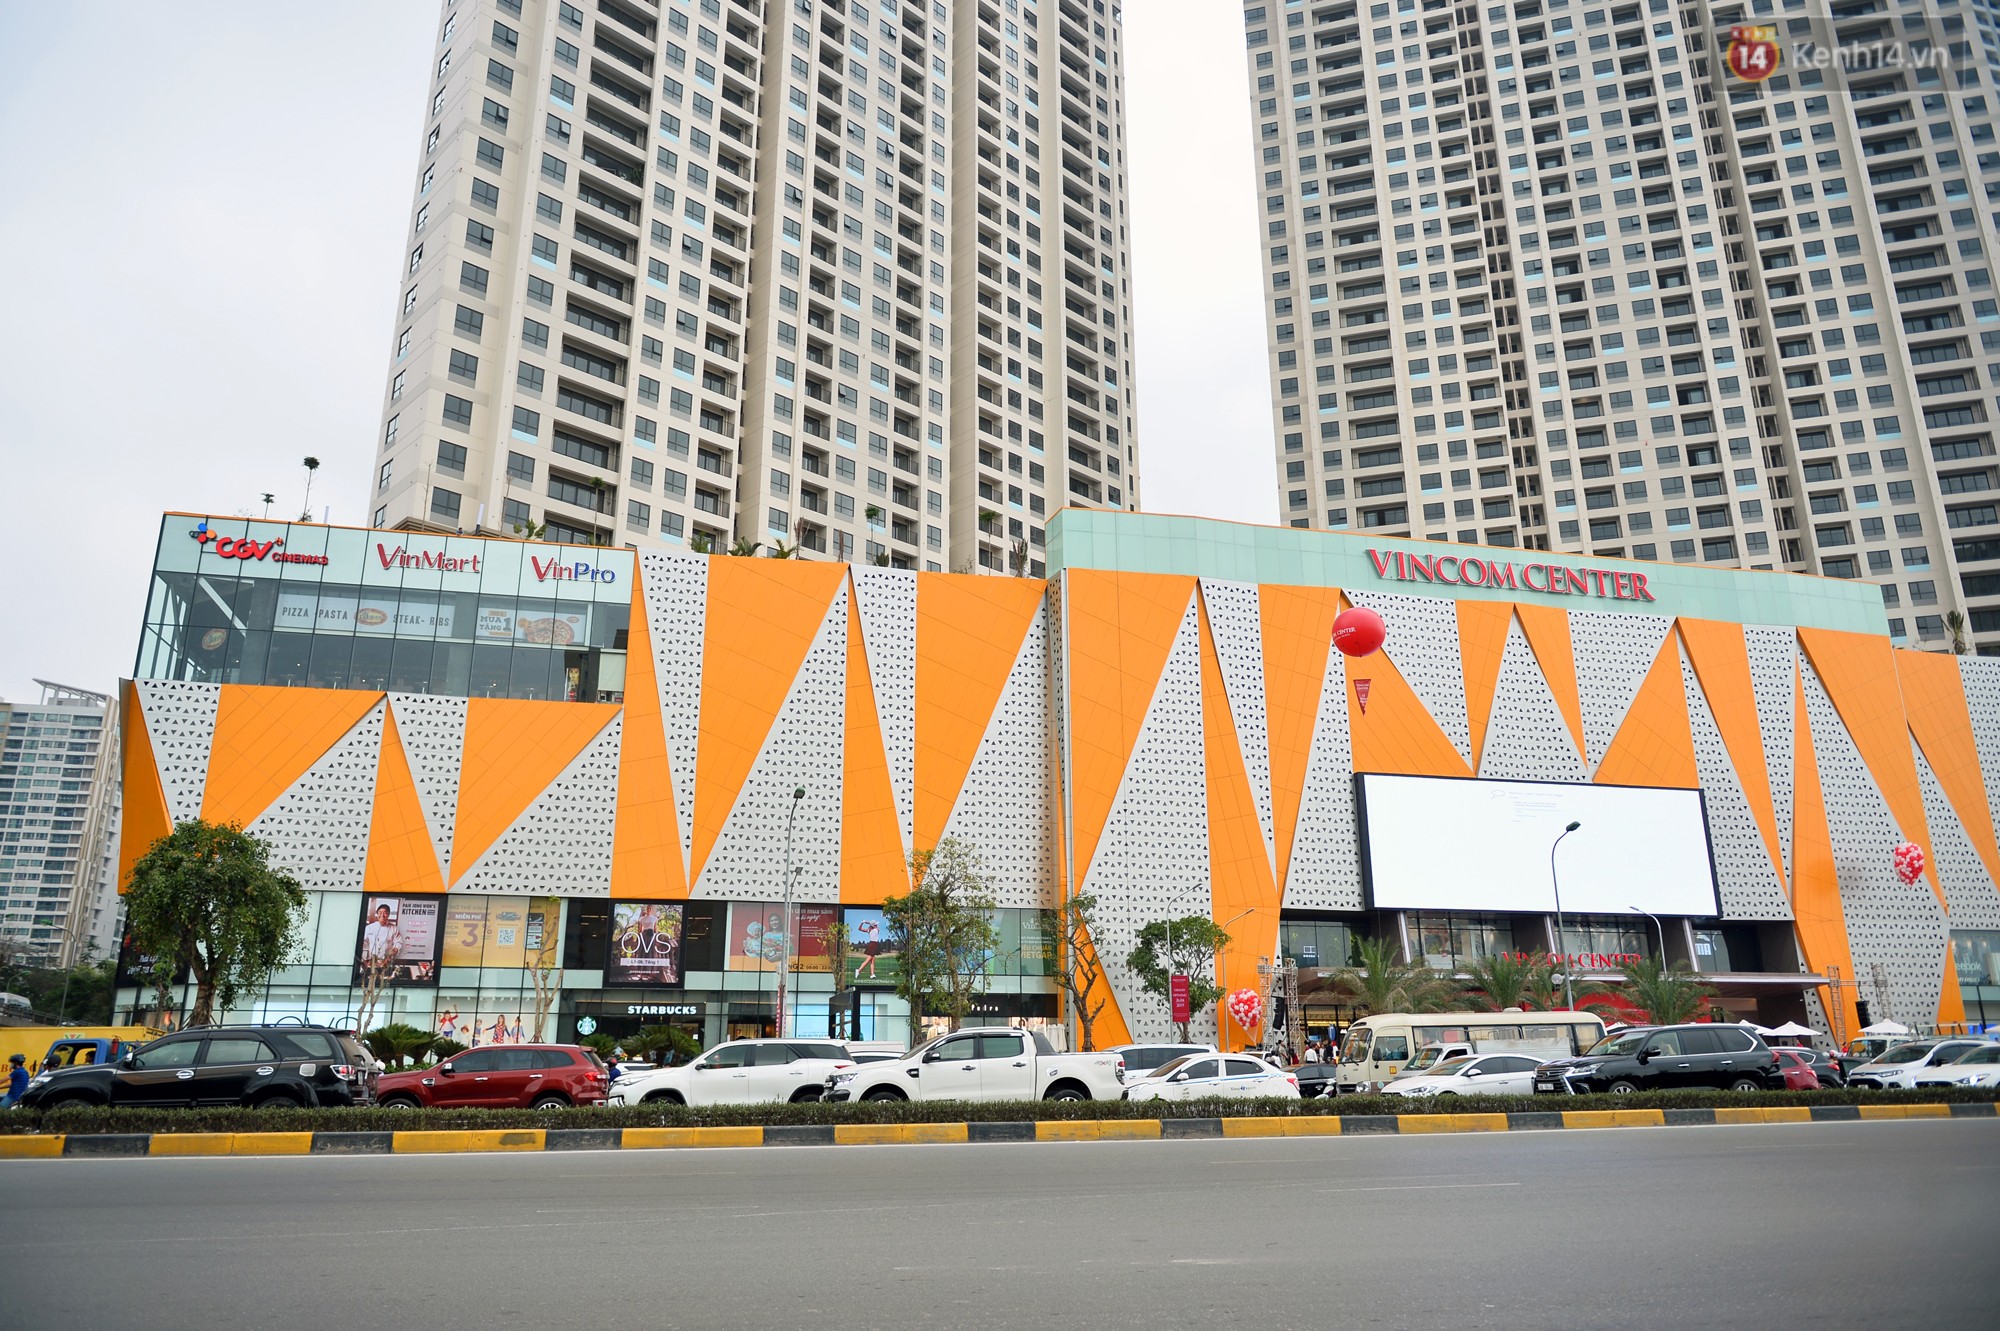 Hà Nội: Chính thức khai trương Vincom Center thứ 10 tại Trần Duy Hưng - Ảnh 5.